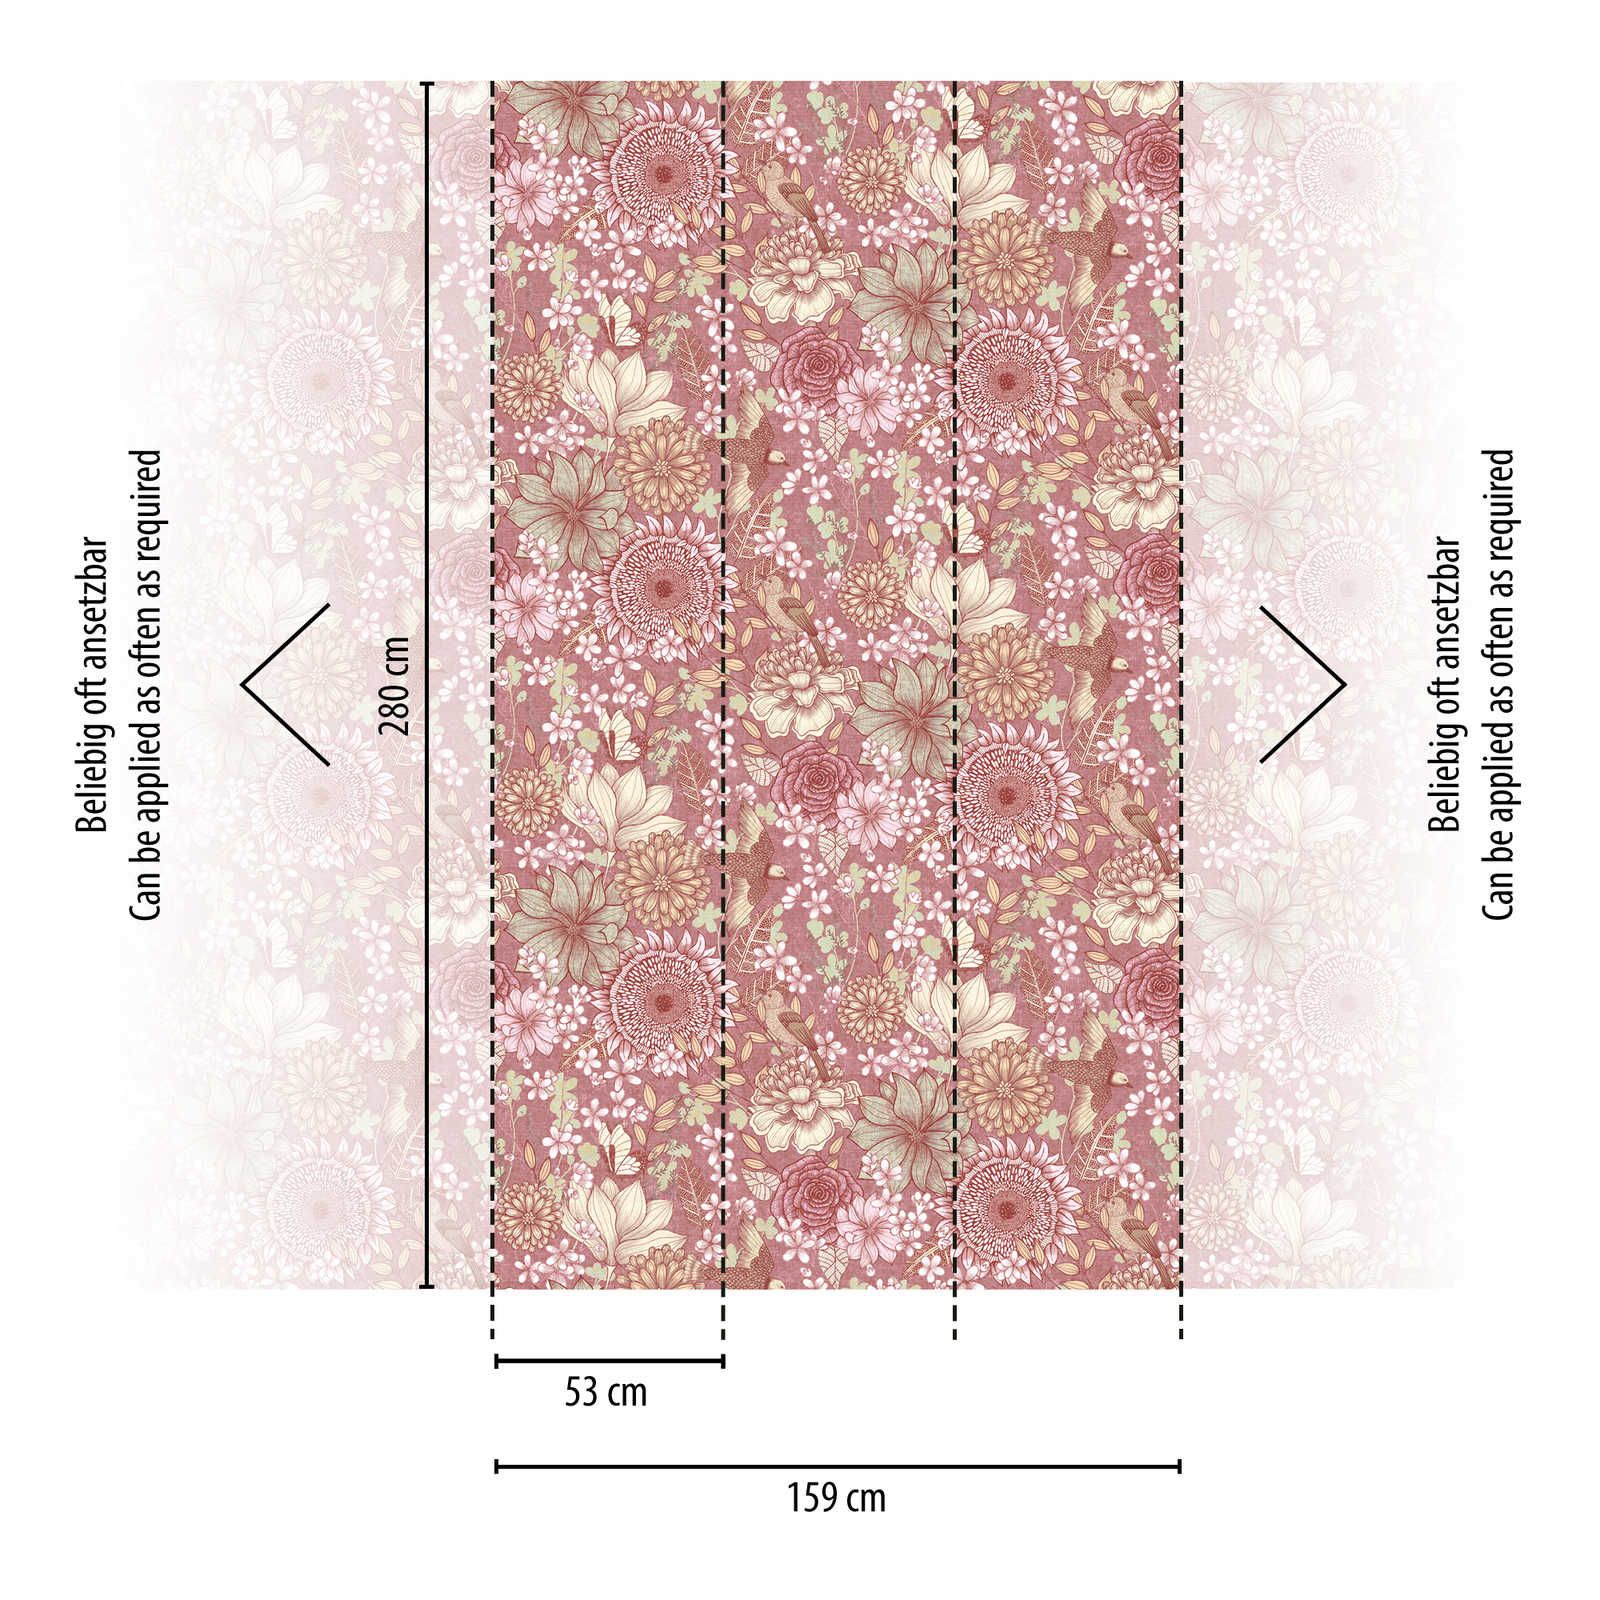             Papel pintado tejido-no tejido floral con varias flores y hojas - rosa, blanco, crema
        